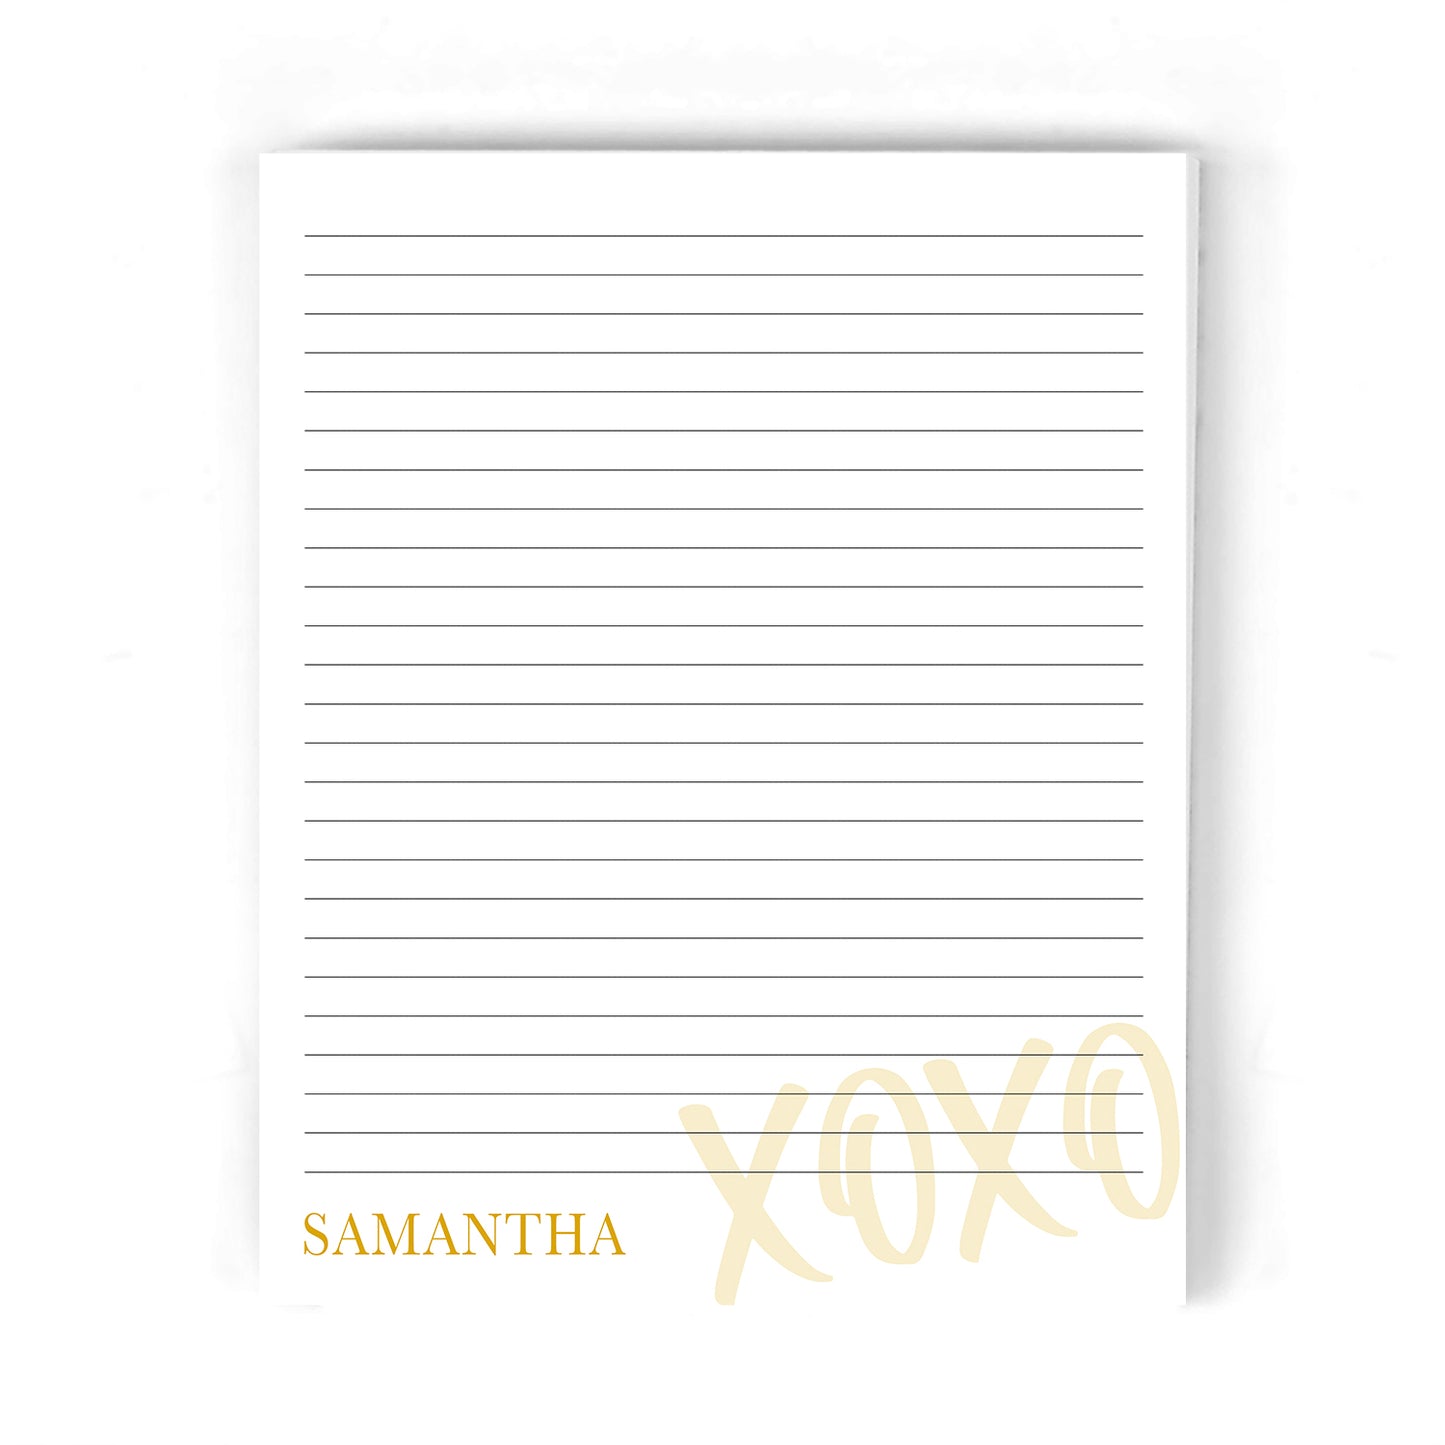 XOXO Notepad